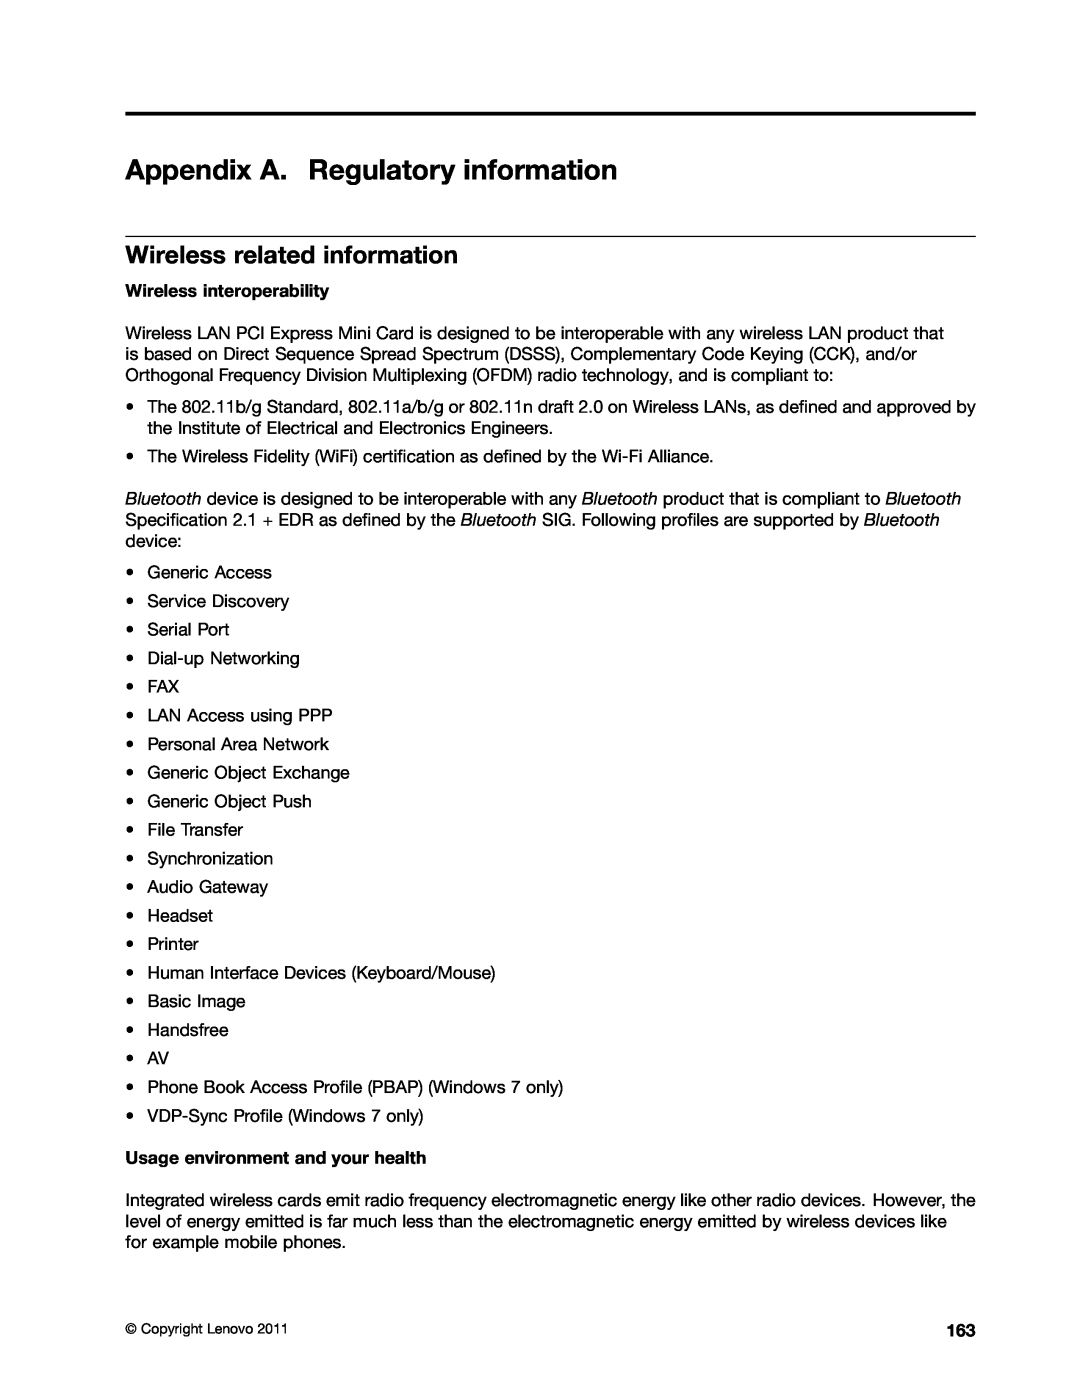 Lenovo E420, E520, 114155U manual Appendix A. Regulatory information, Wireless related information, Wireless interoperability 